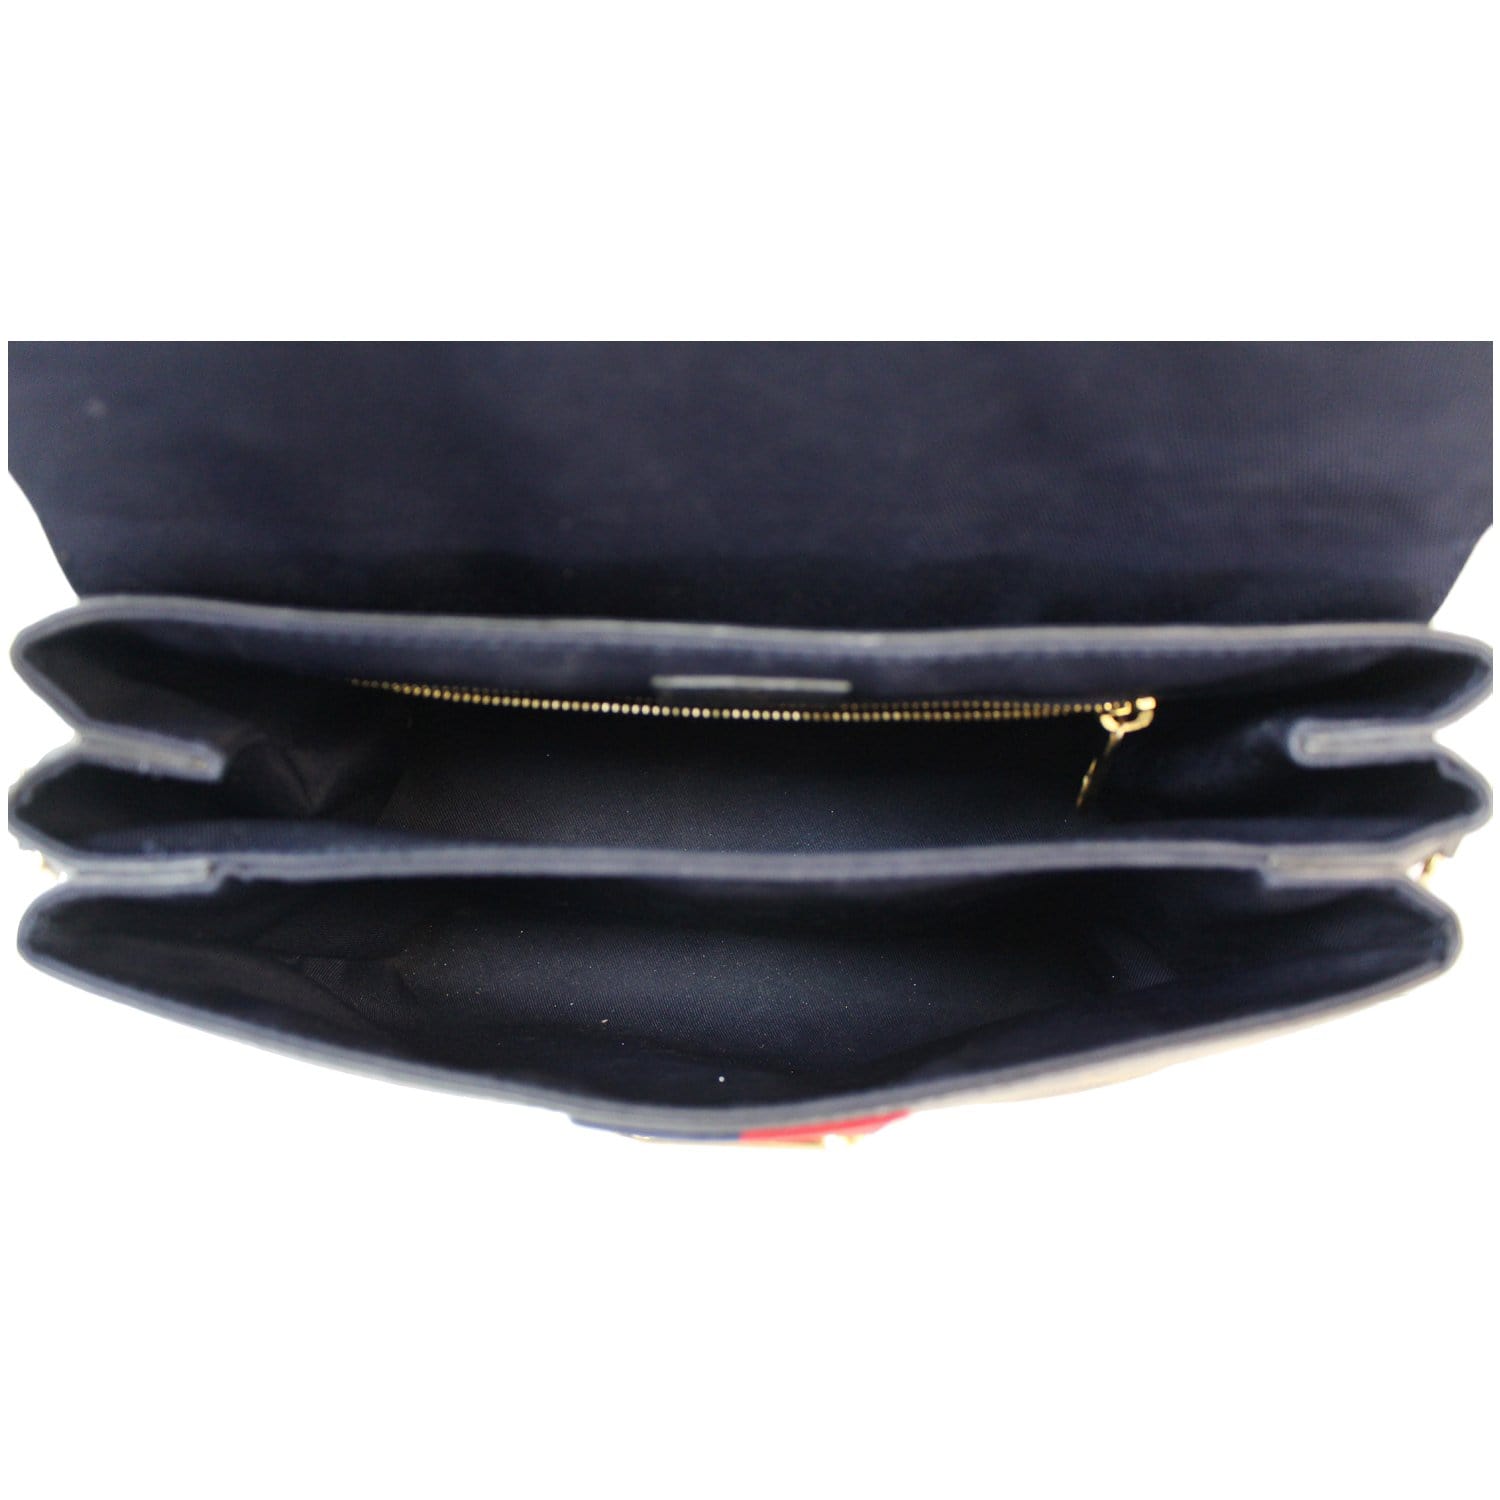 Louis Vuitton Monogram Georges MM - Brown Handle Bags, Handbags - LOU718497